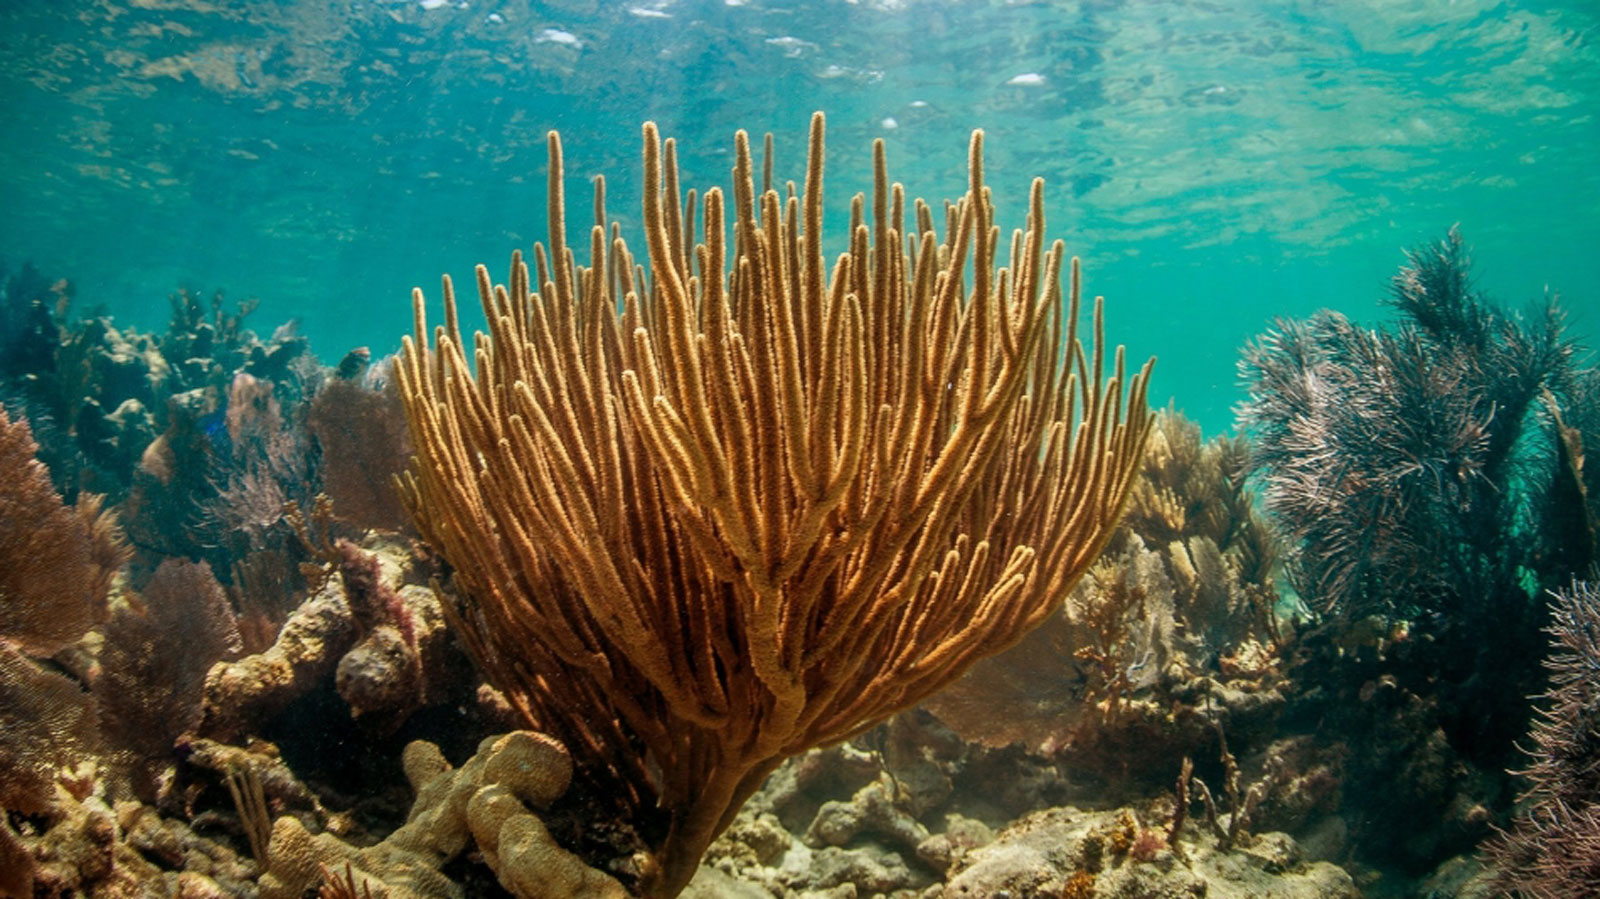 Coral fan on a reef